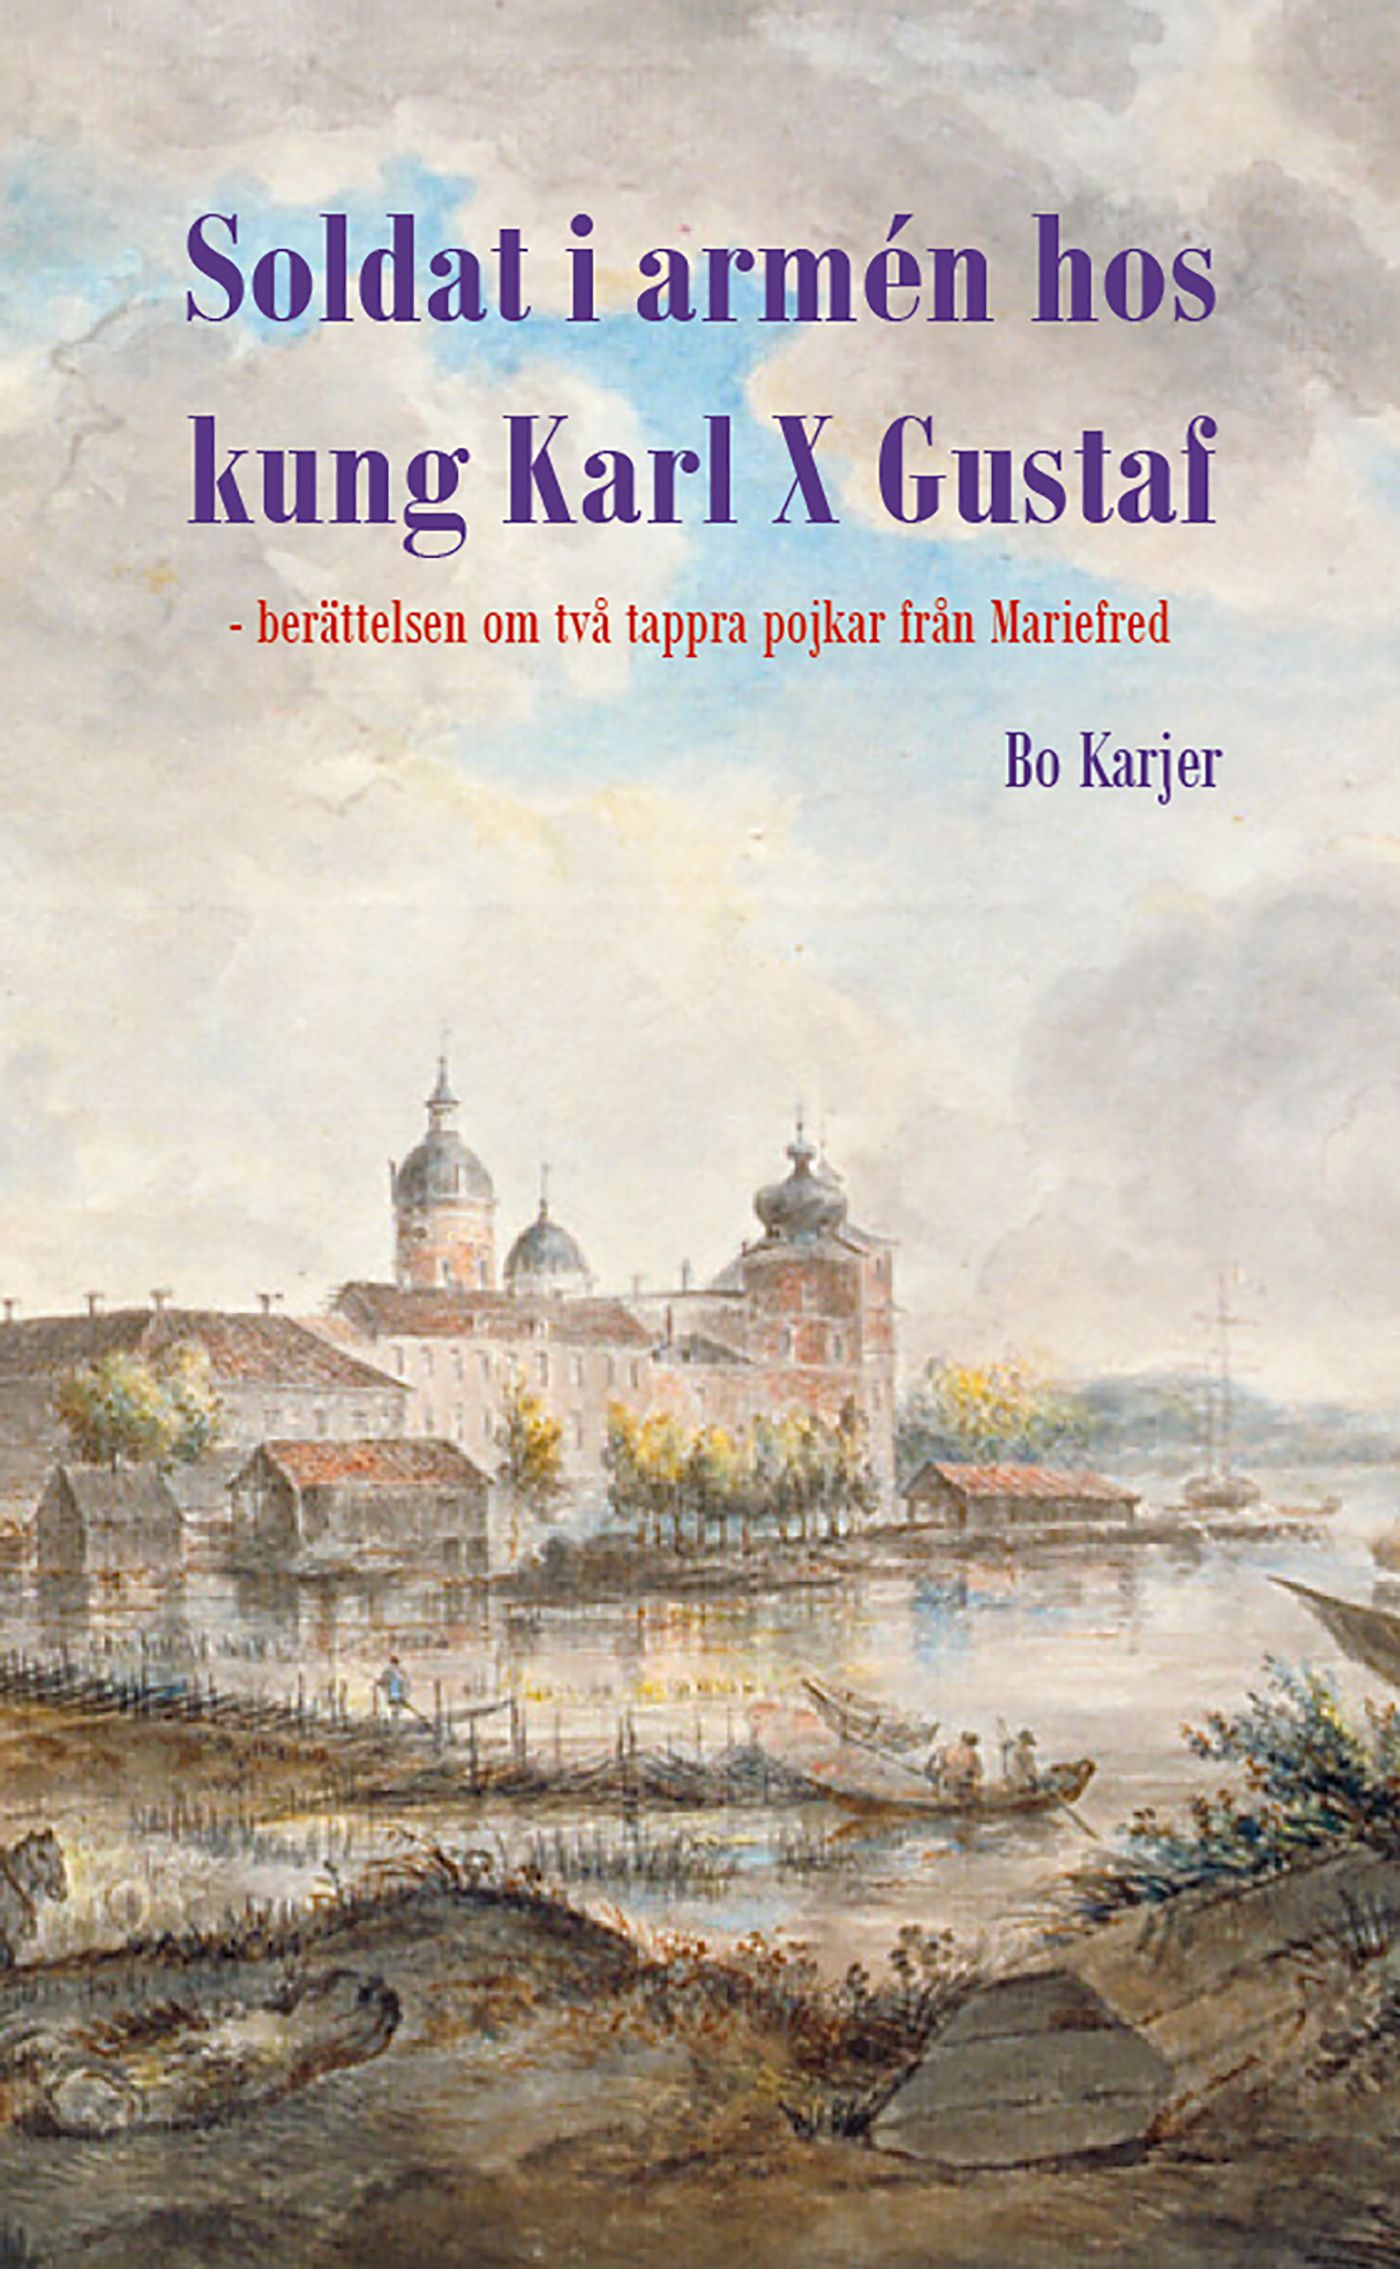 Soldat i armén hos kung Karl X Gustaf, eBook by Bo Karjer